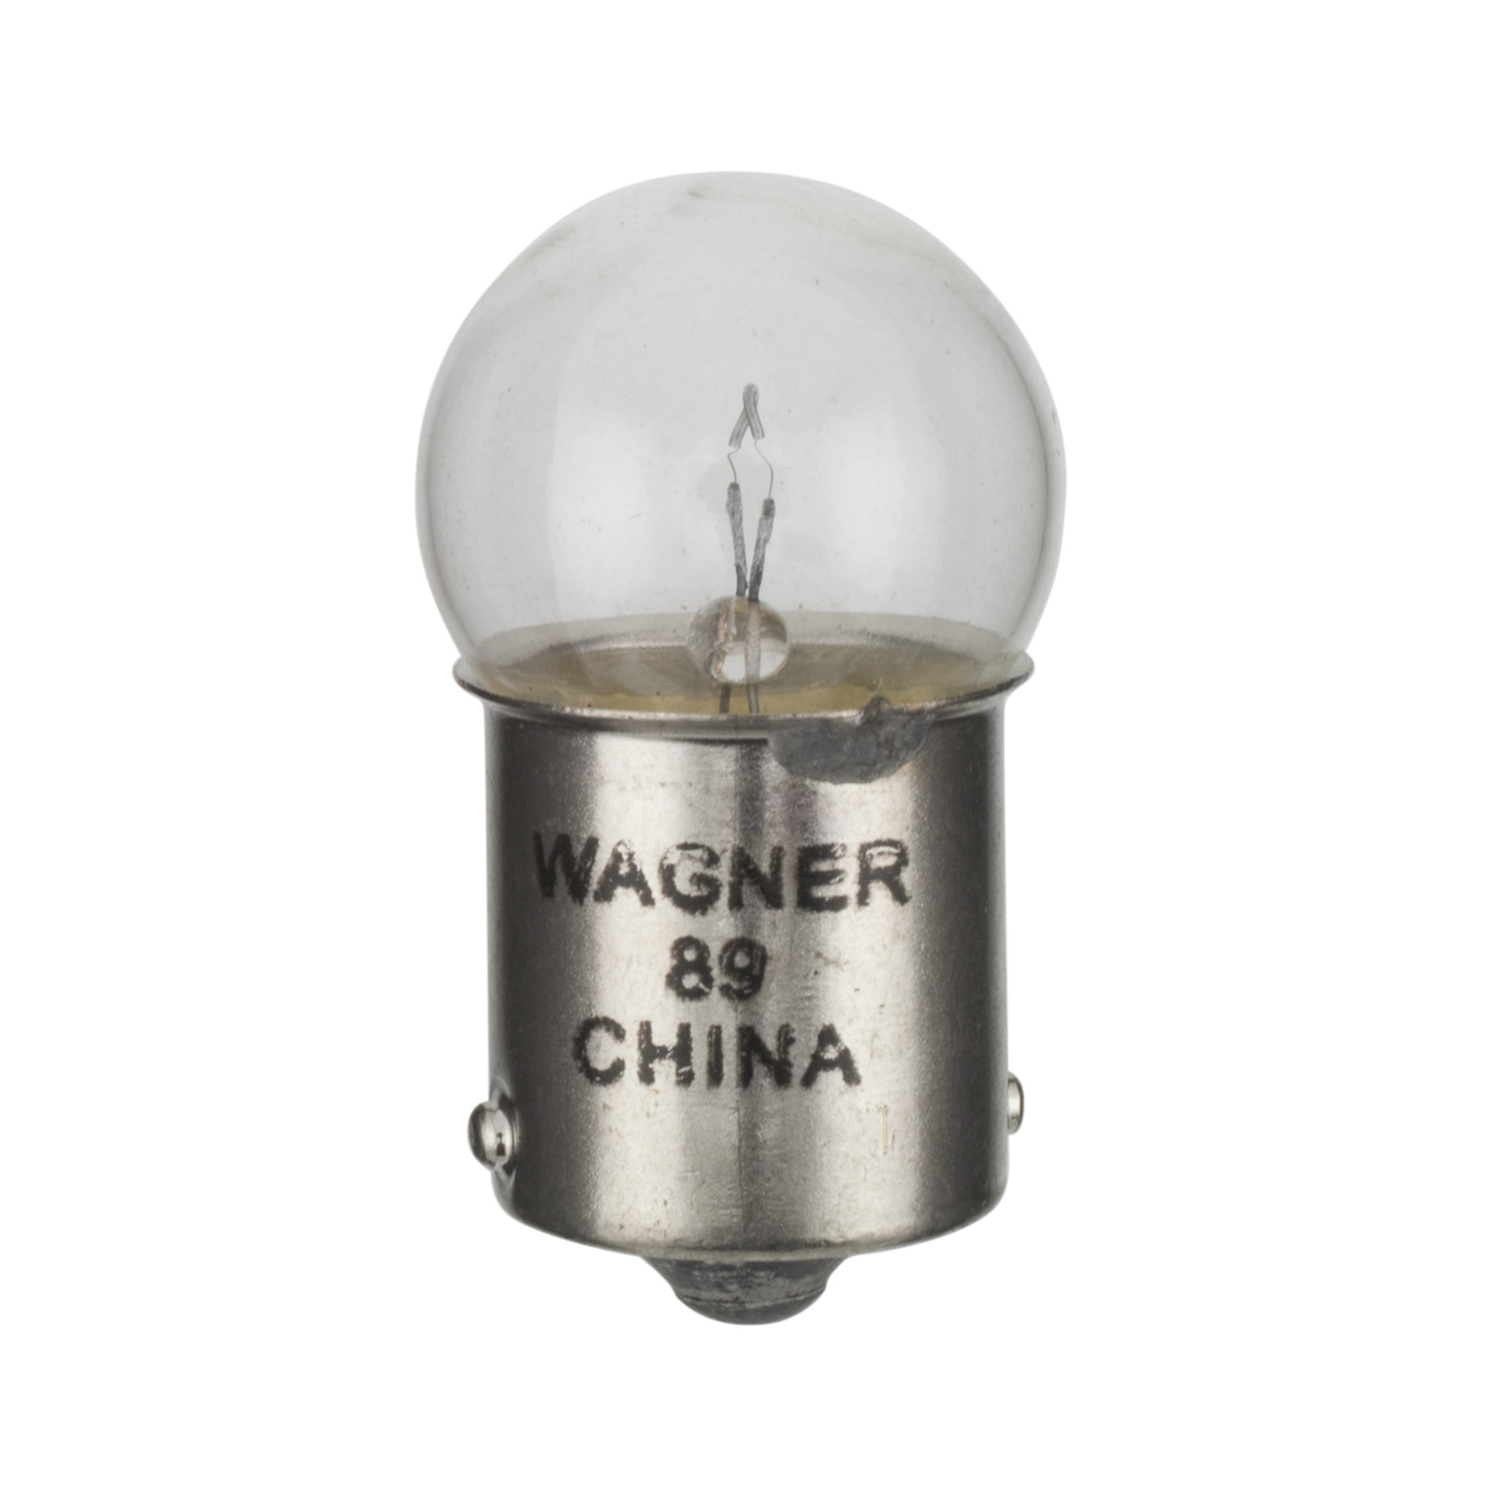 WAGNER LIGHTING - Tail Light Bulb - WLP 89